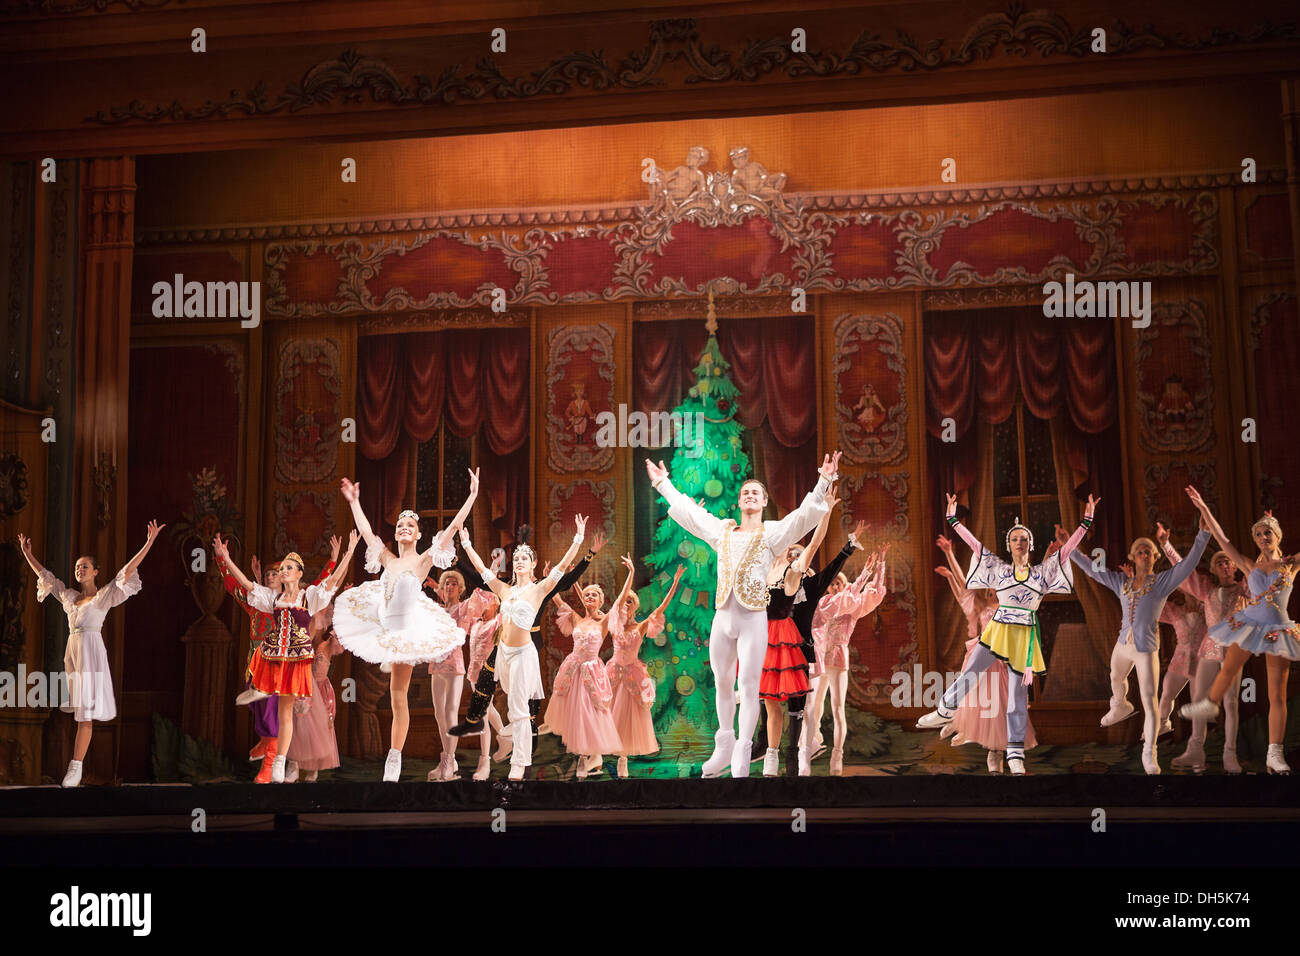 Die Künstler nach dem Eis-Ballett "Der Nussknacker" (Shchelkunchik) auf ca. Oktober 2013 in Sankt-Petersburg, Russland Stockfoto